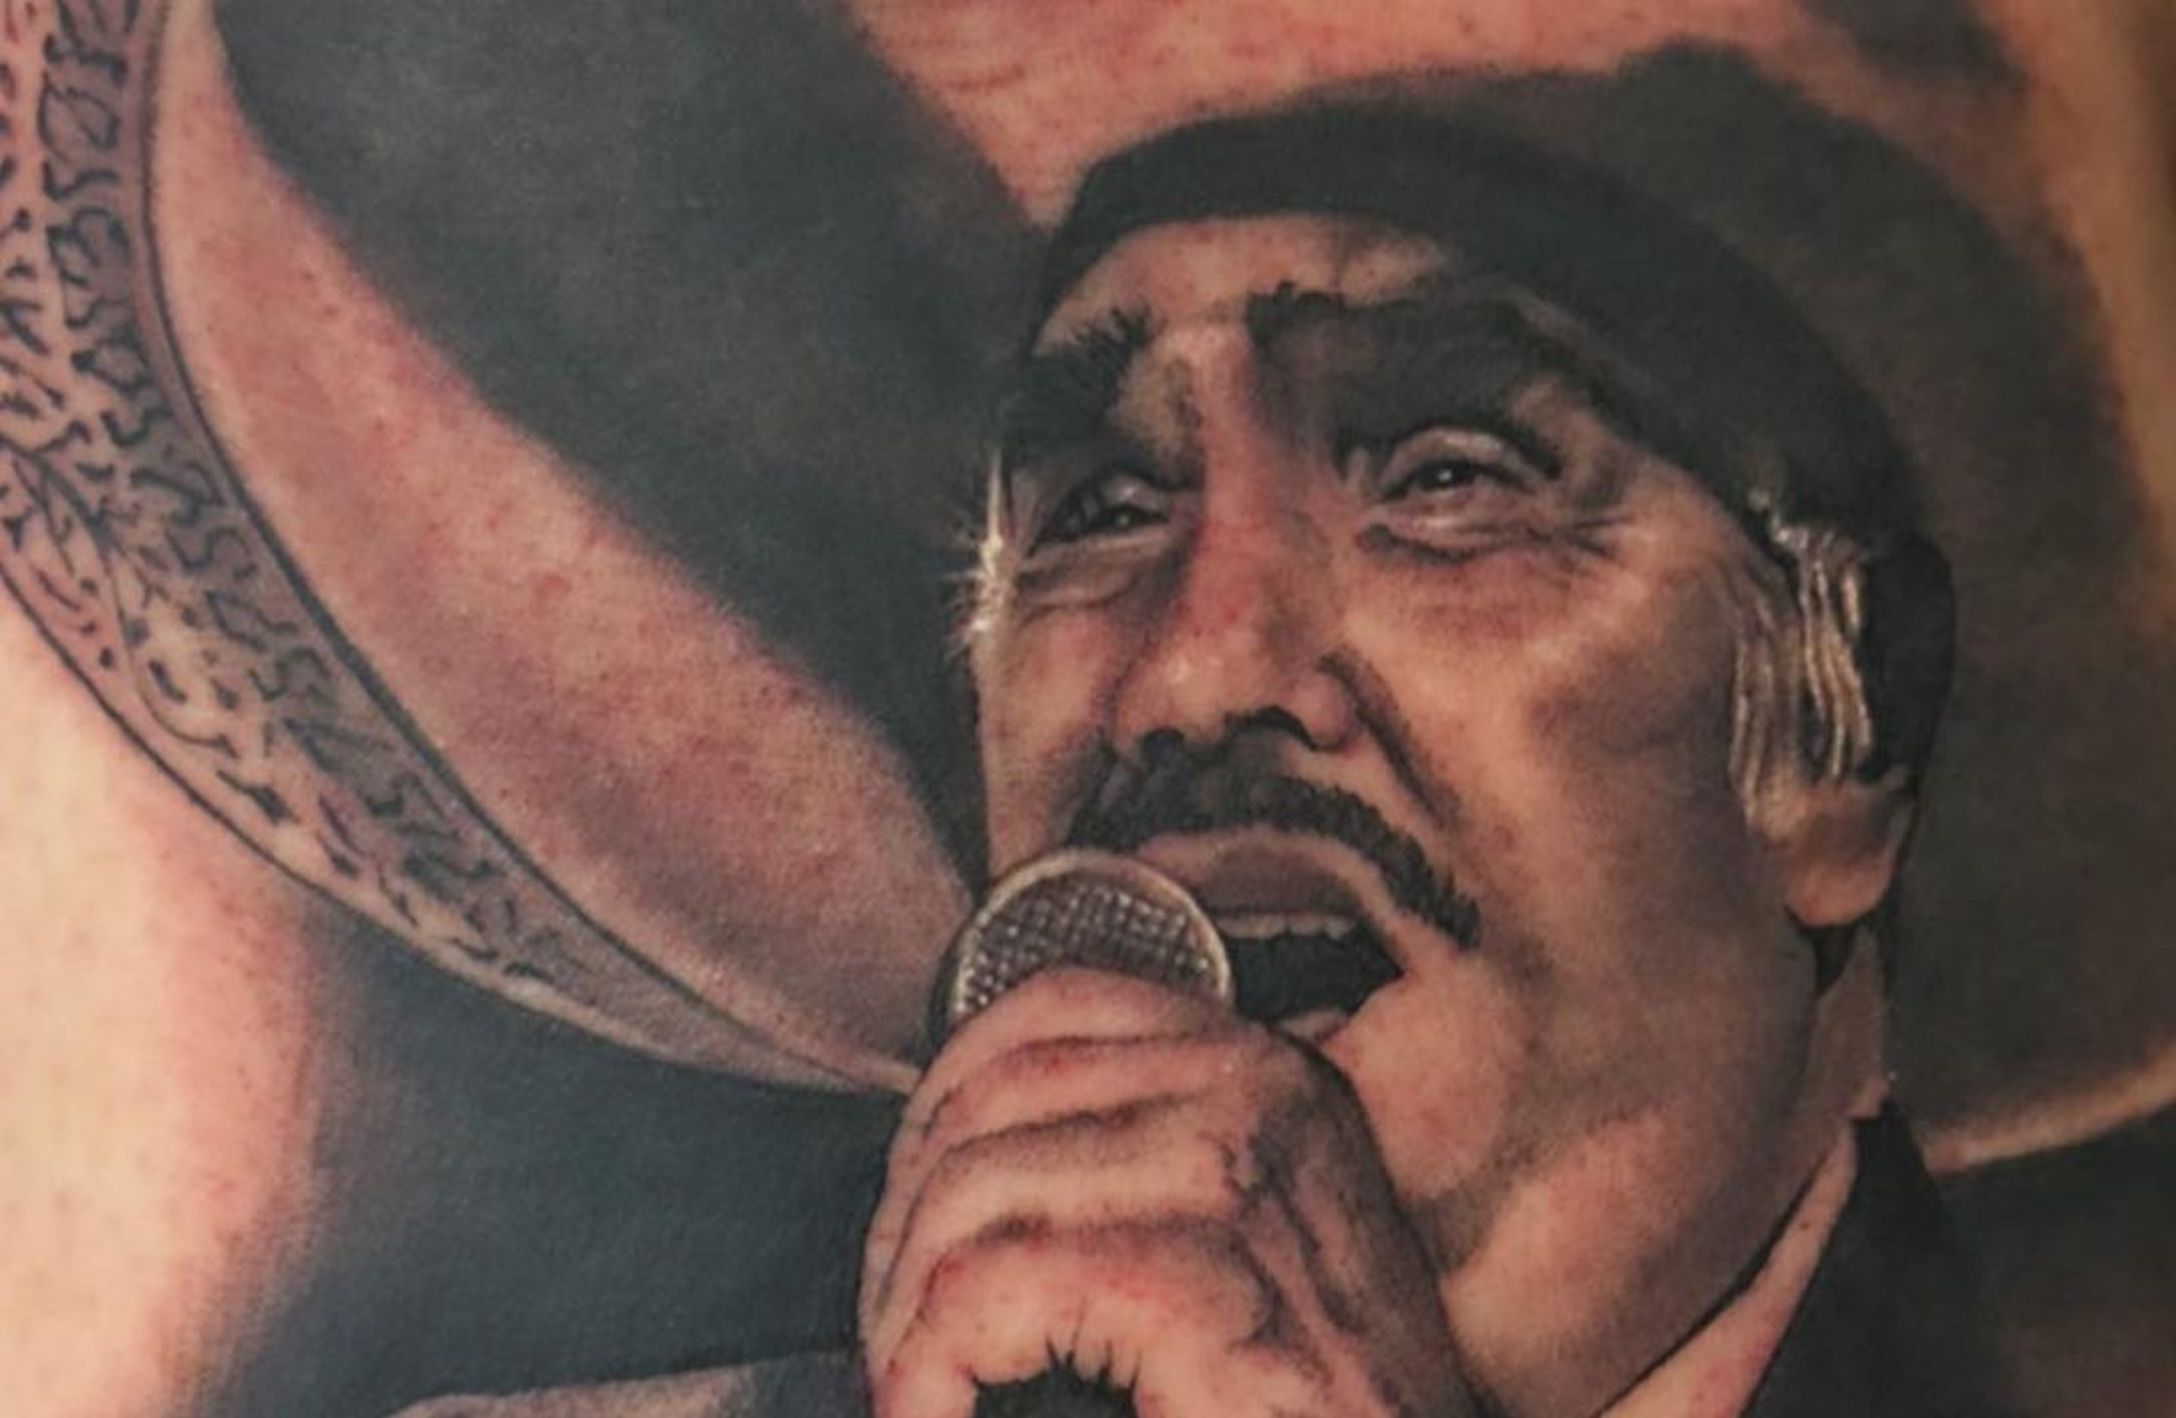 Nietos de Vicente Fernández inmortalizan a su abuelo con tatuajes